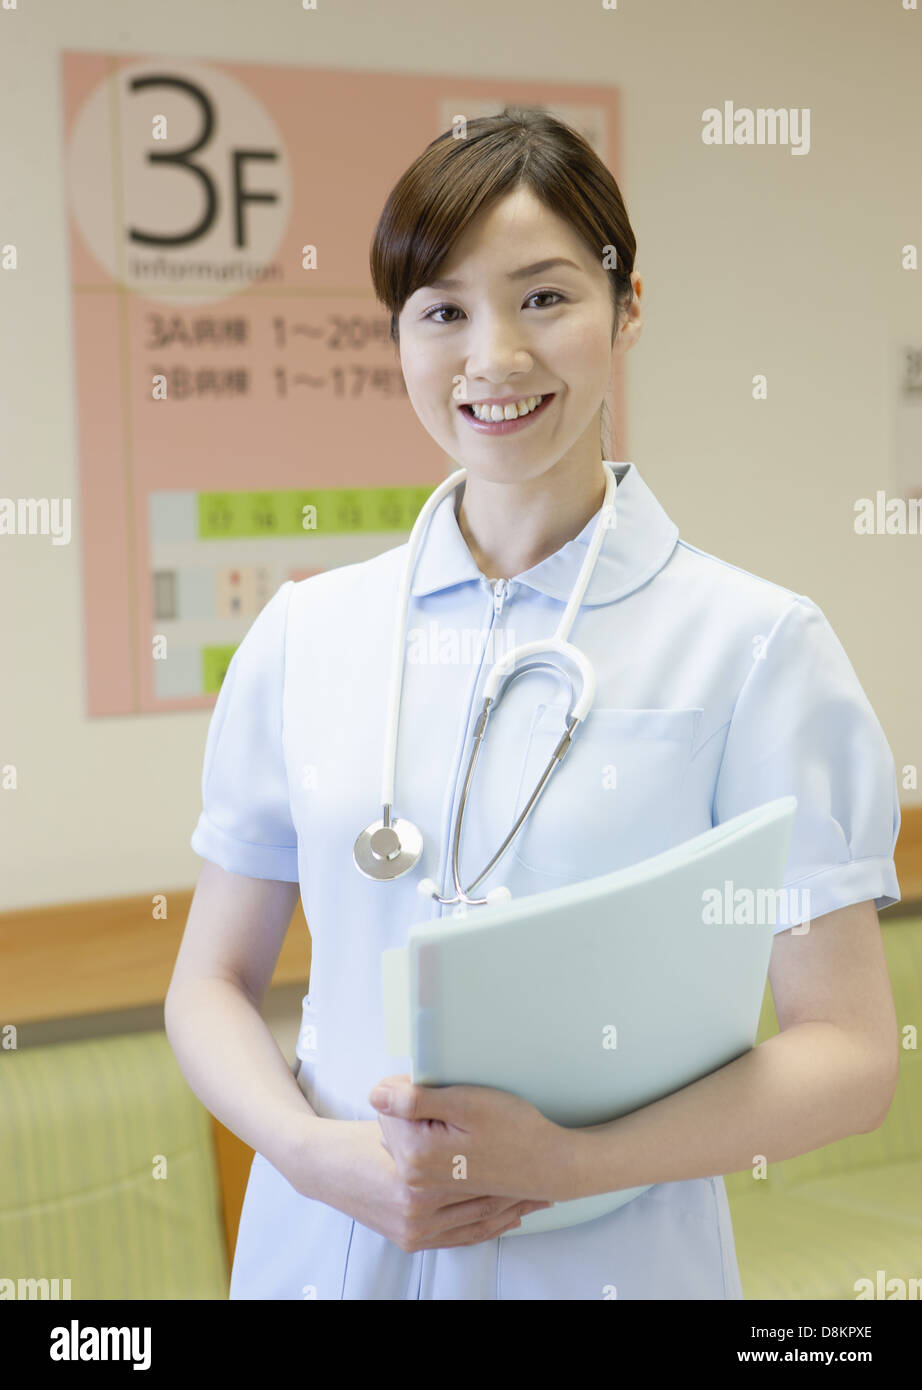 Nurse smiling Stock Photo